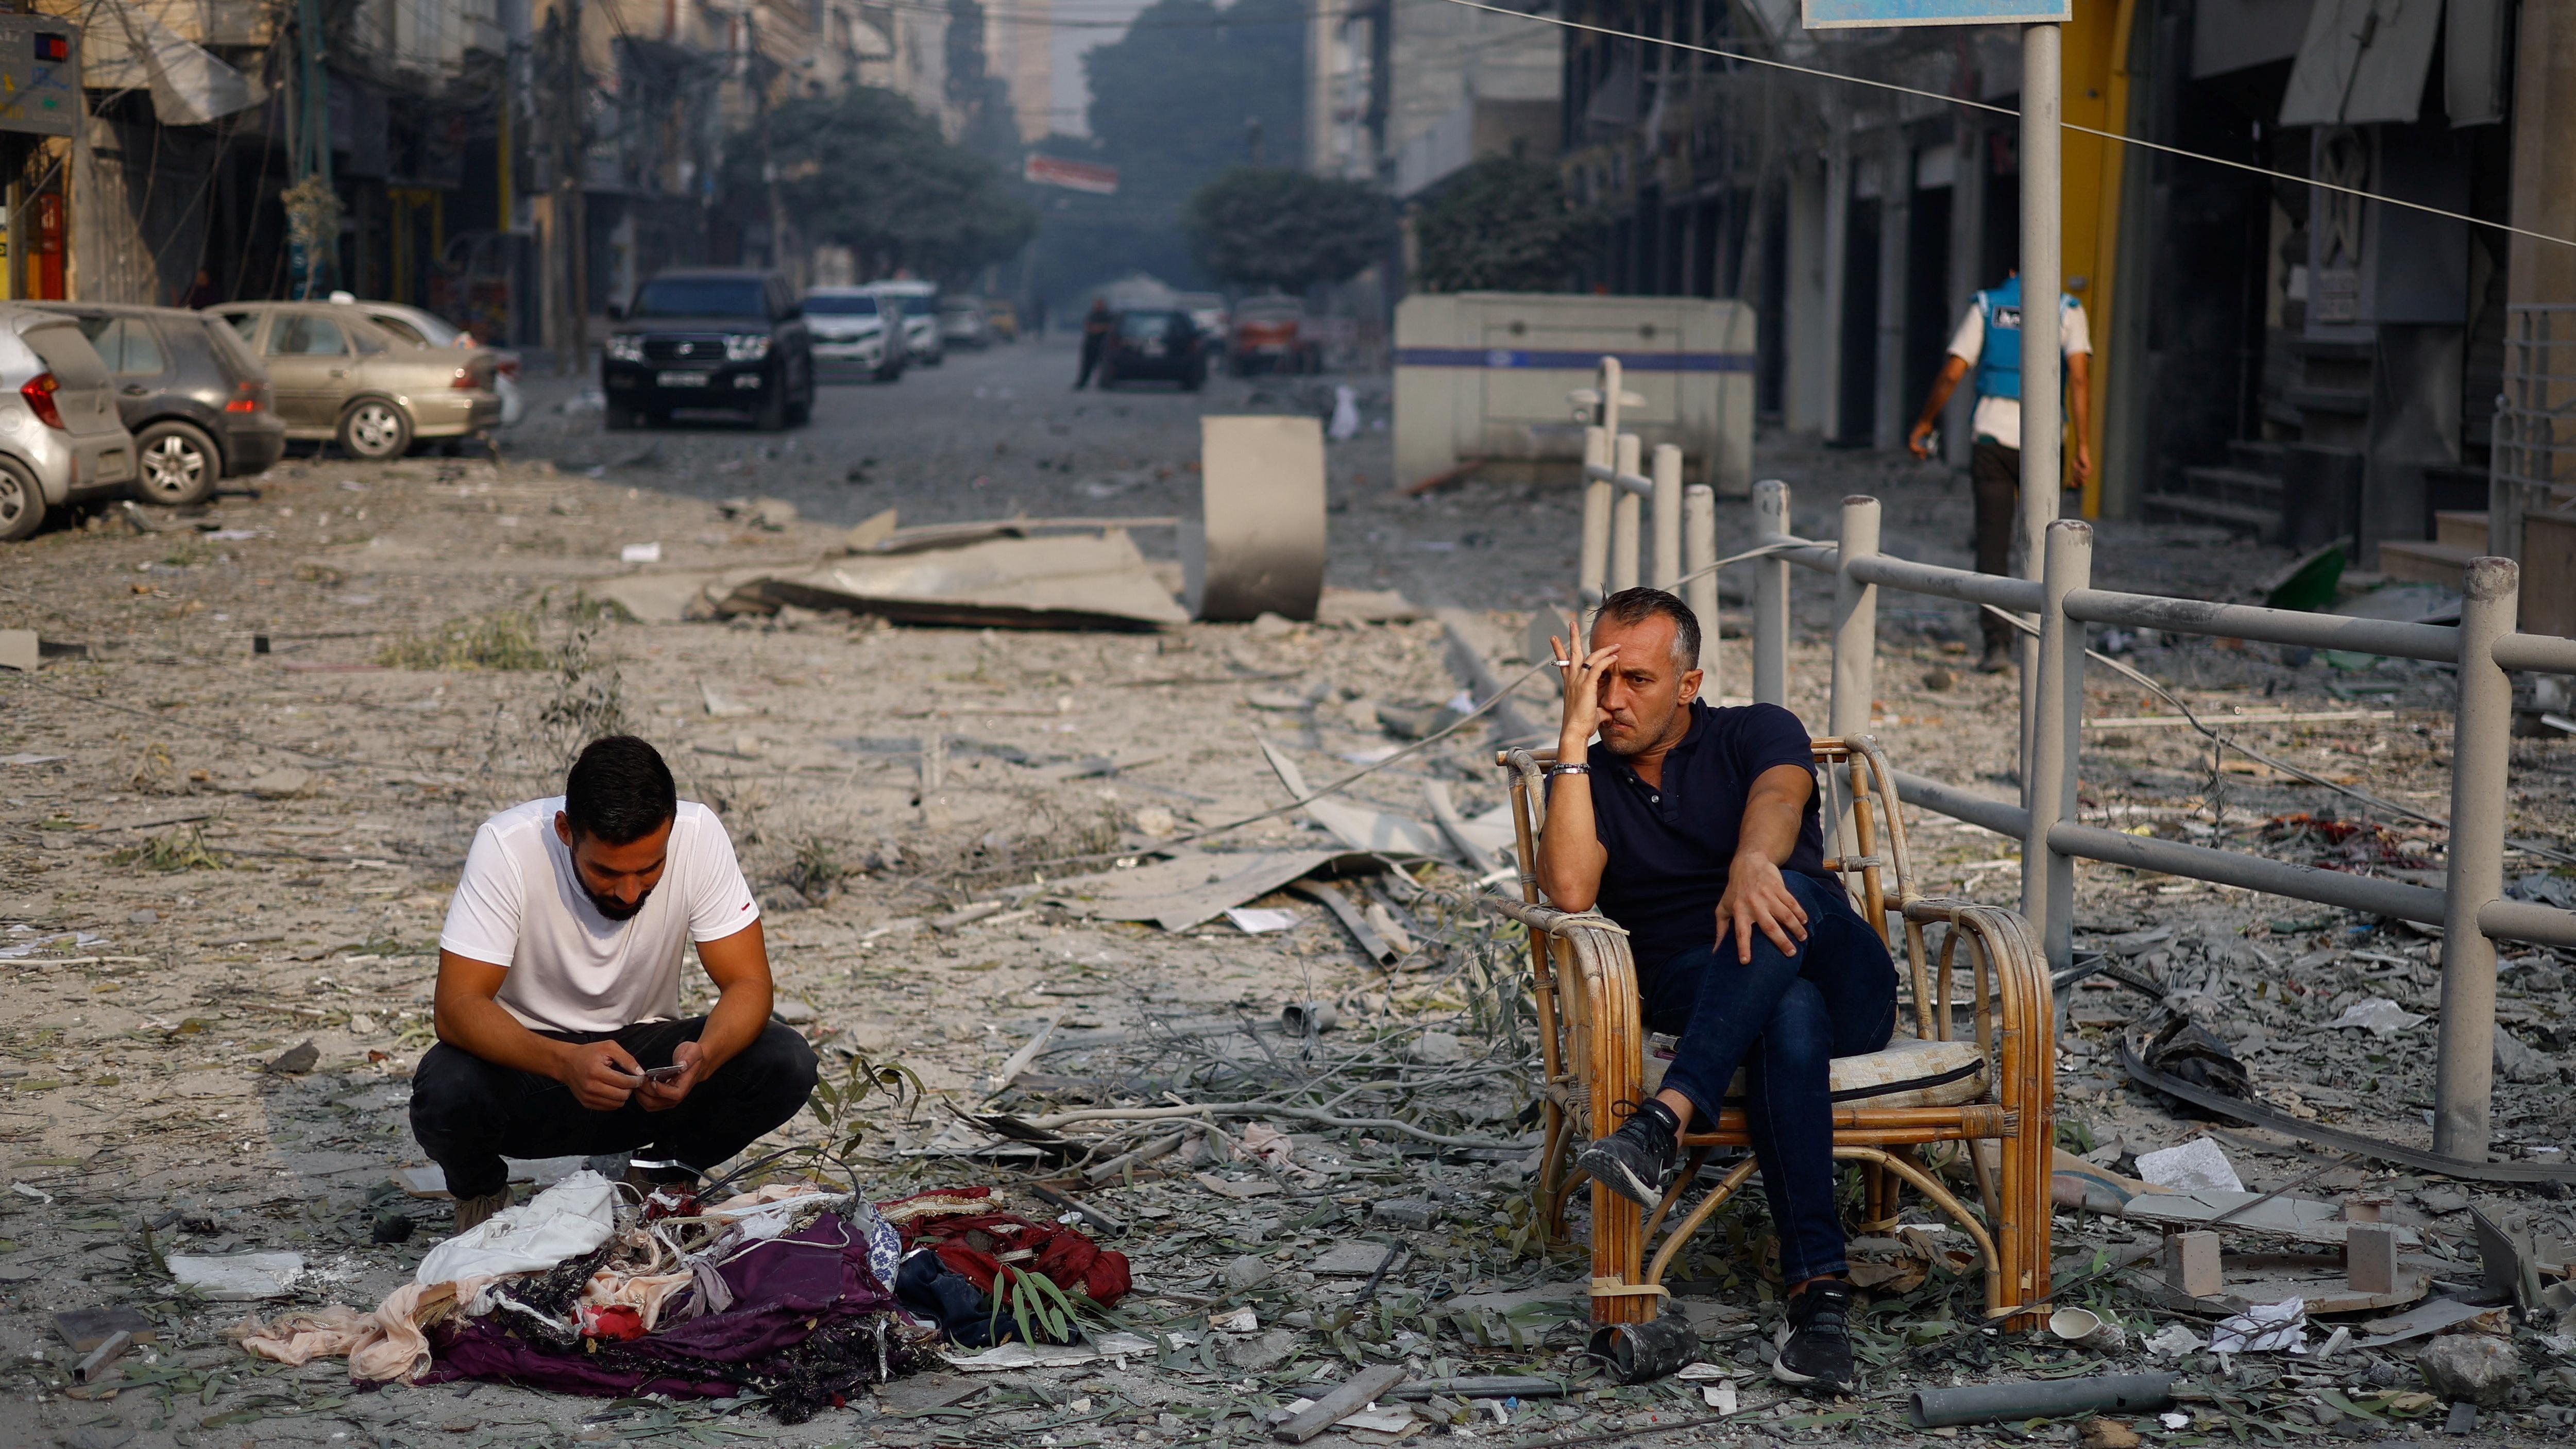 شخصان يجلسان بعد أن تم تدمير منزلهما